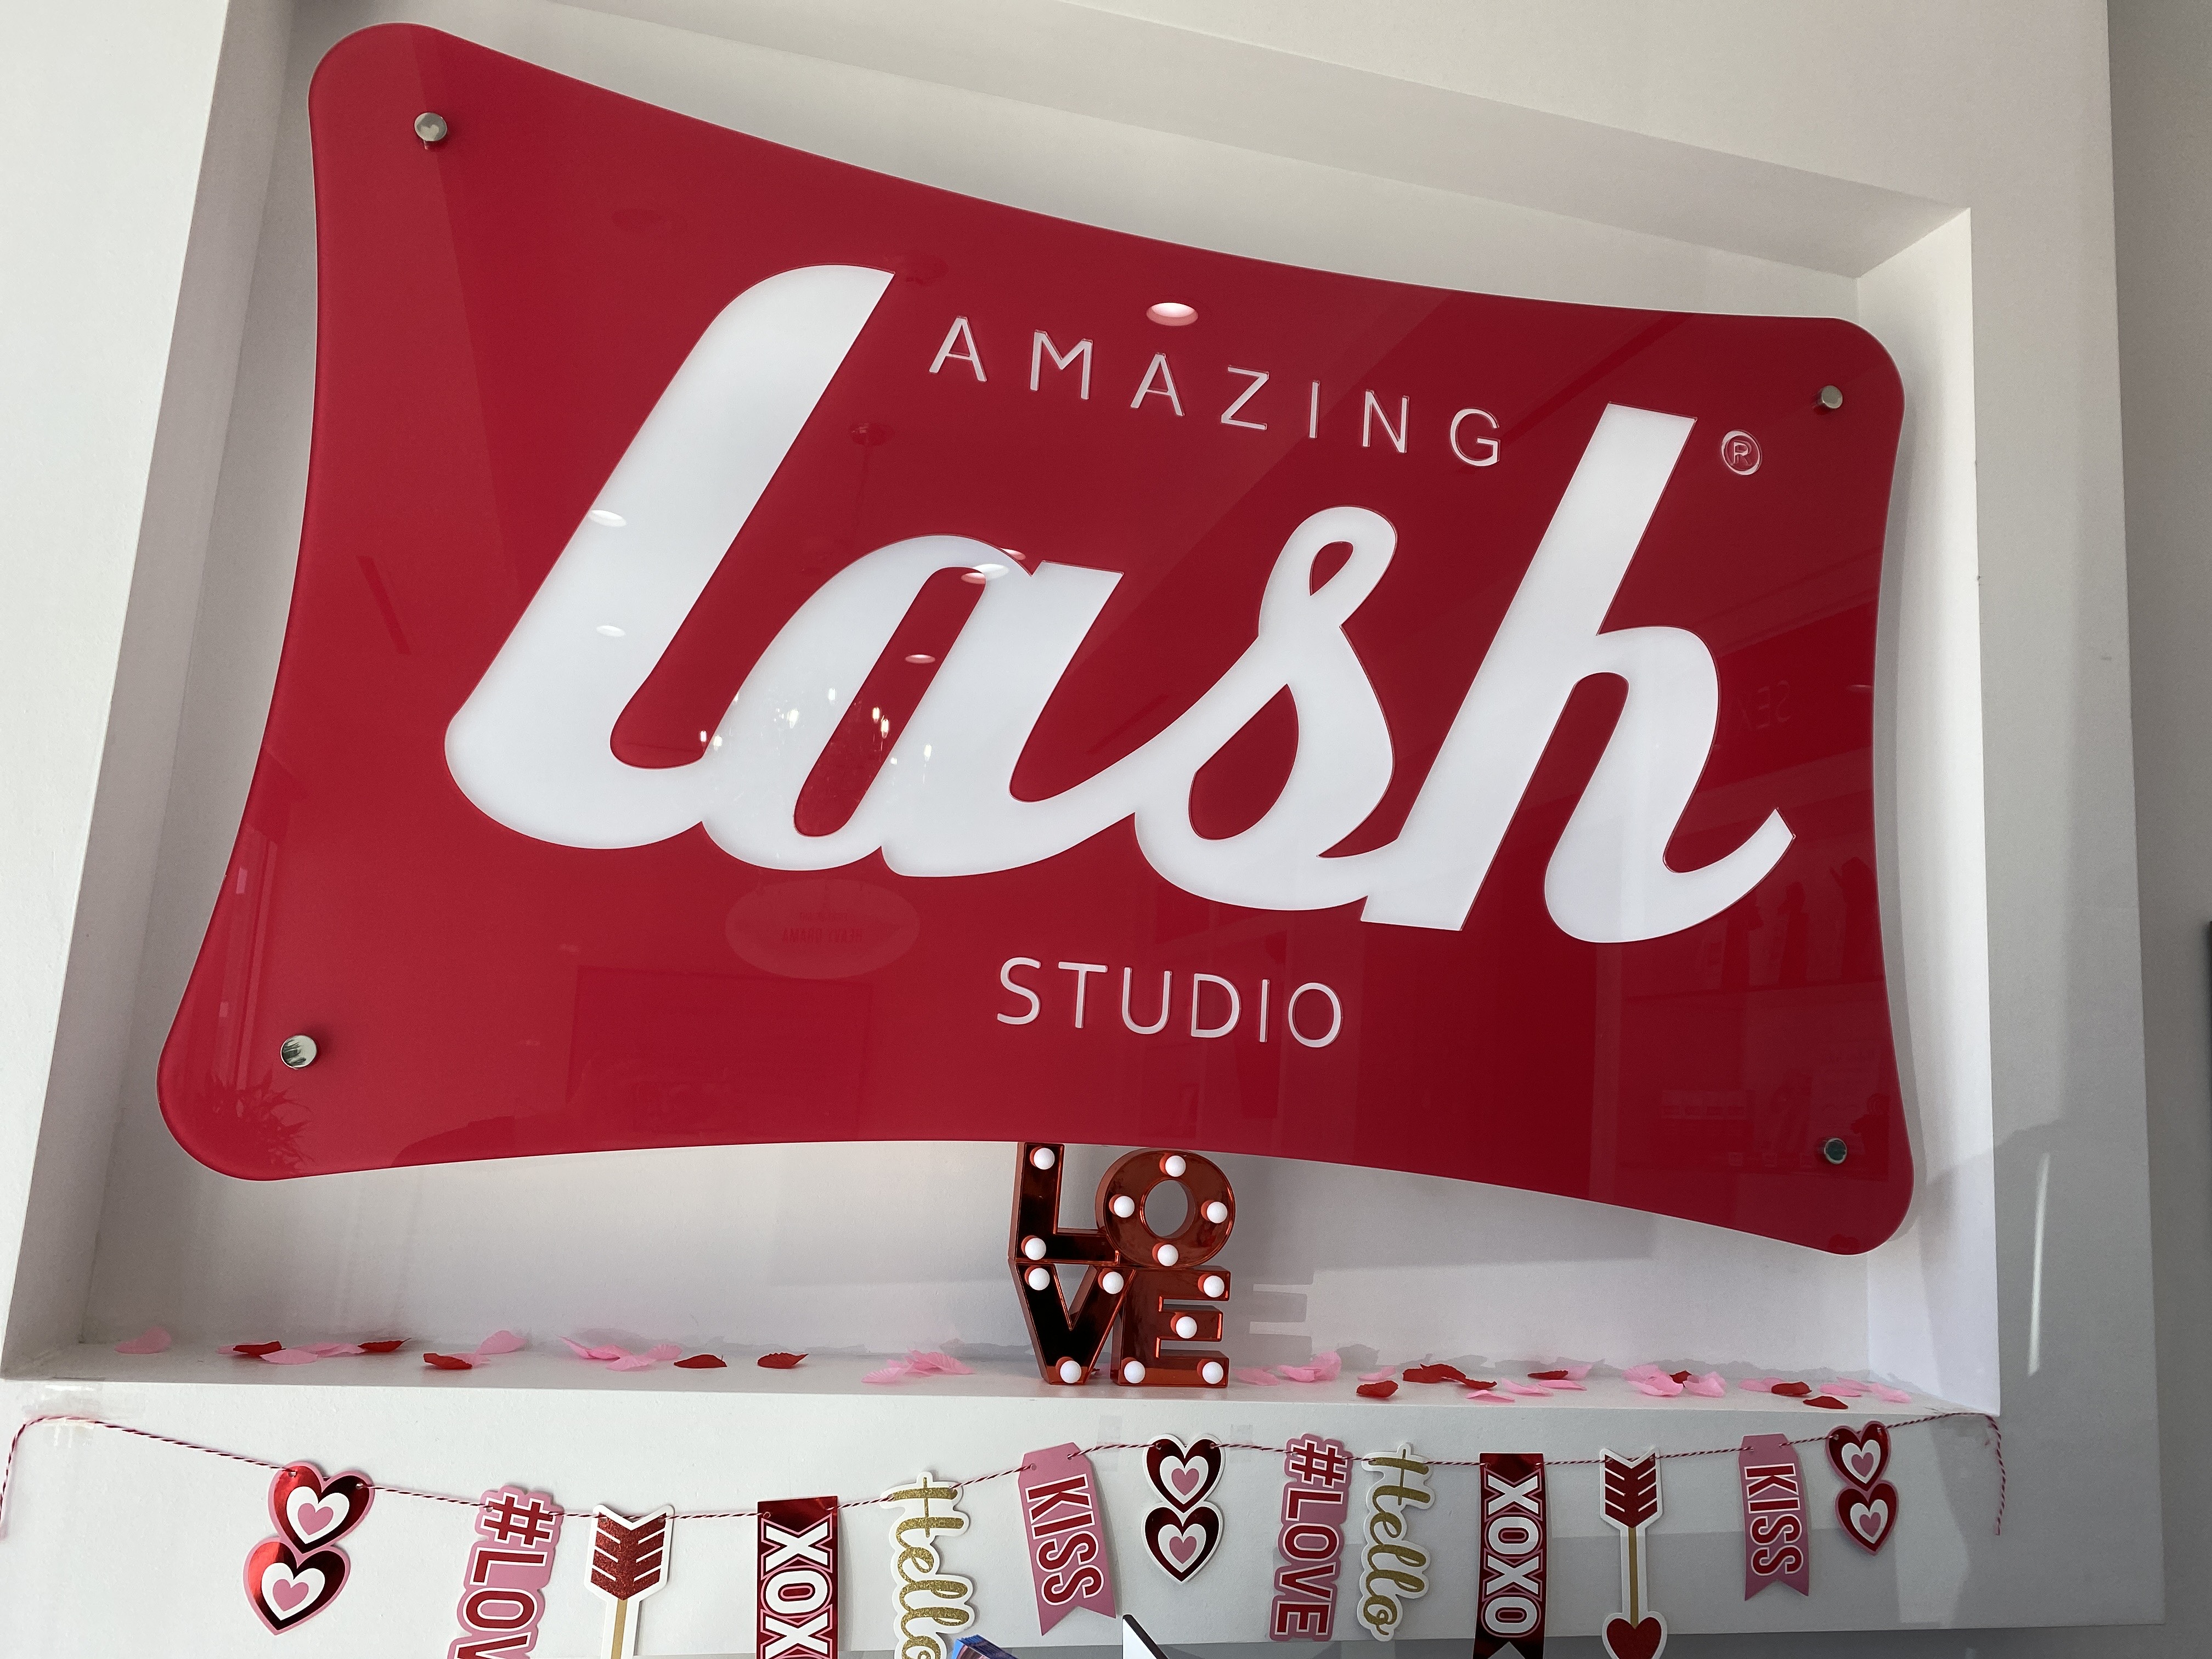 Amazing Lash Studio sign